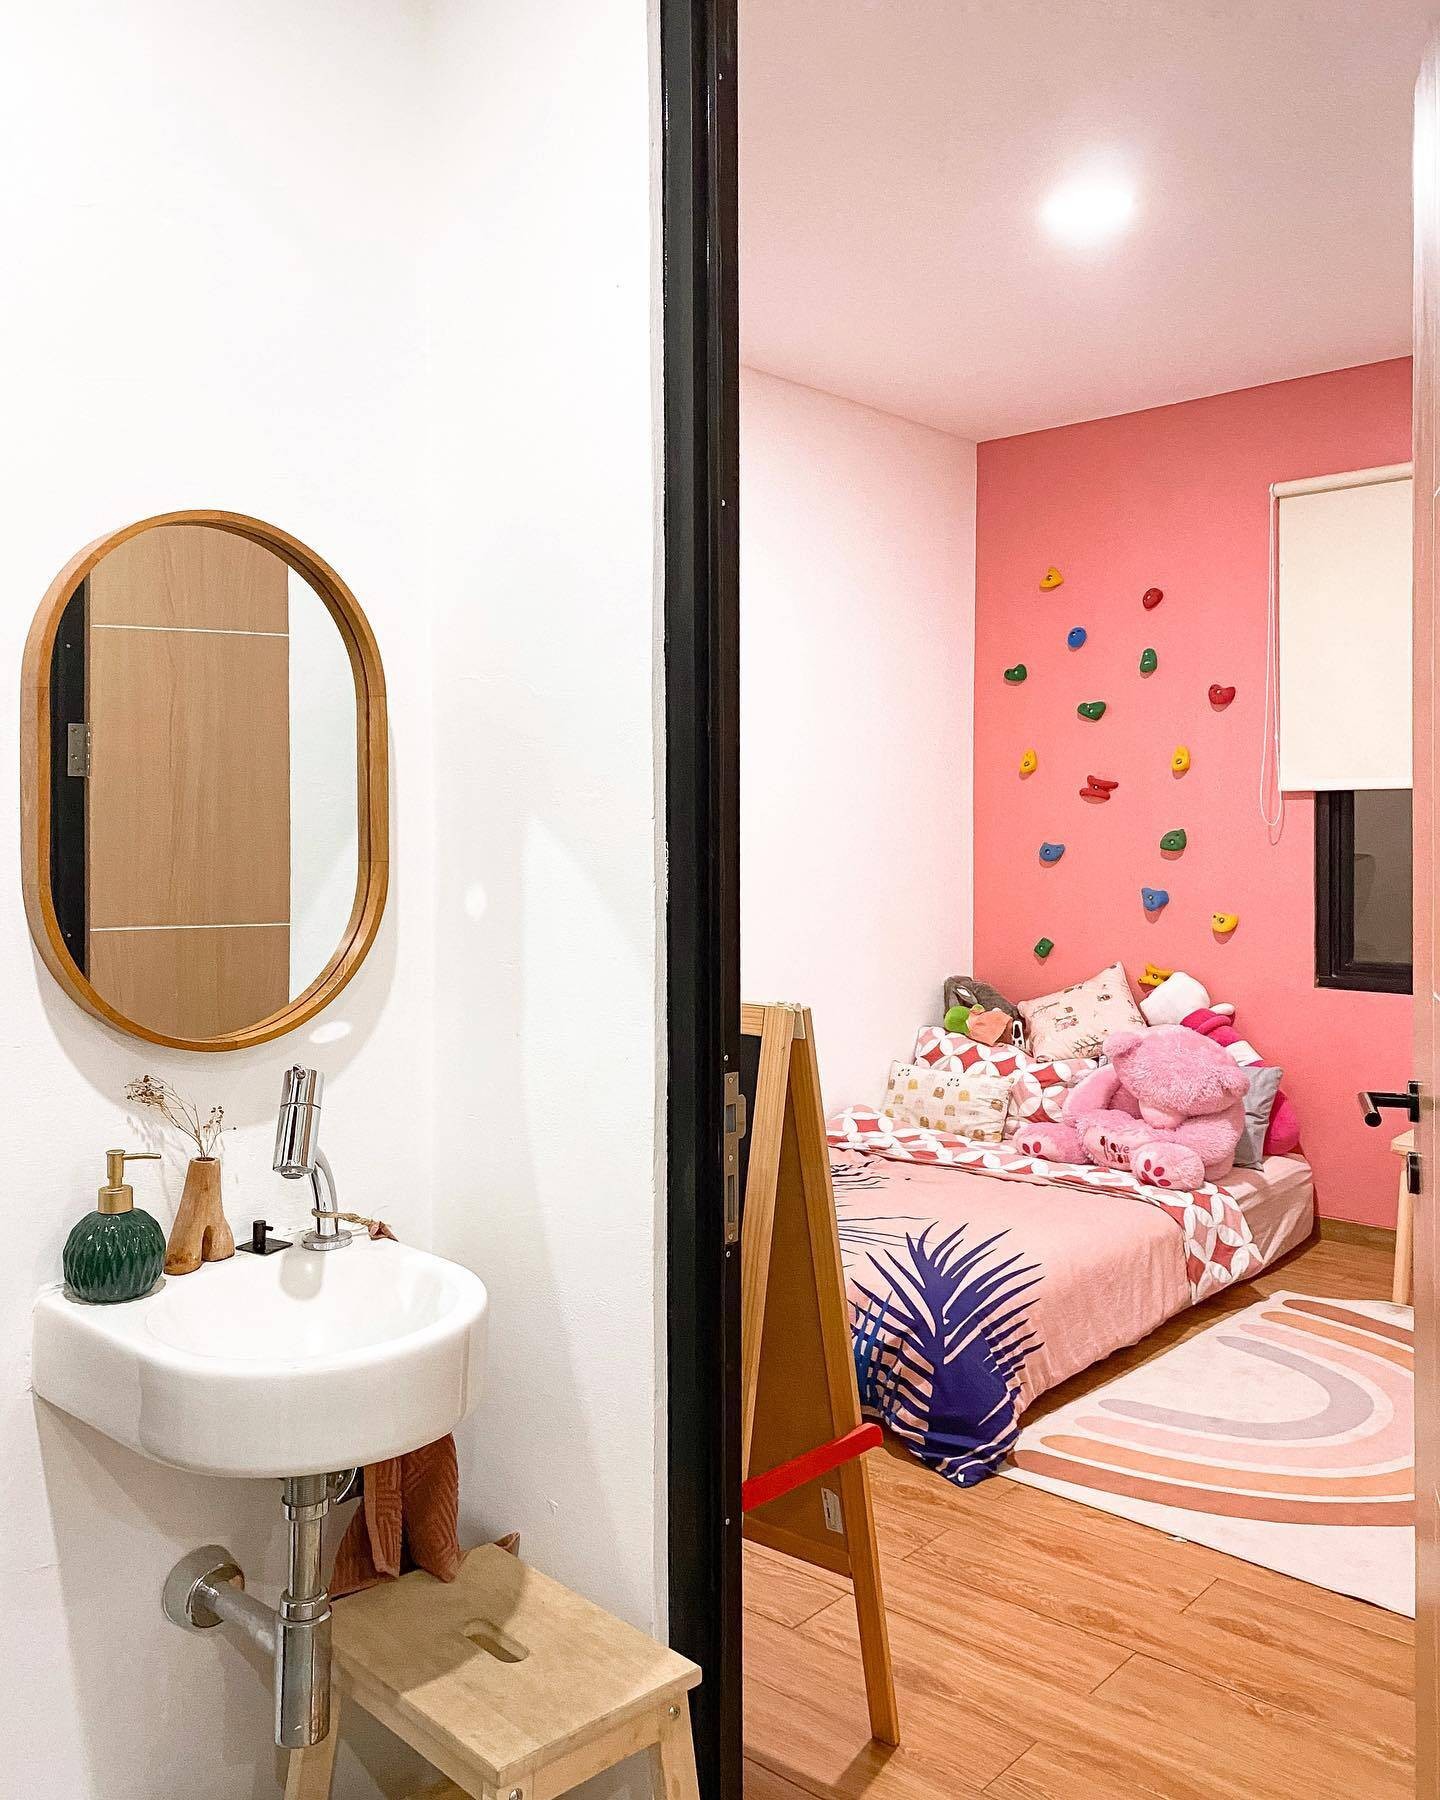 
Phòng ngủ dành cho con gái nhỏ được sơn màu hồng
